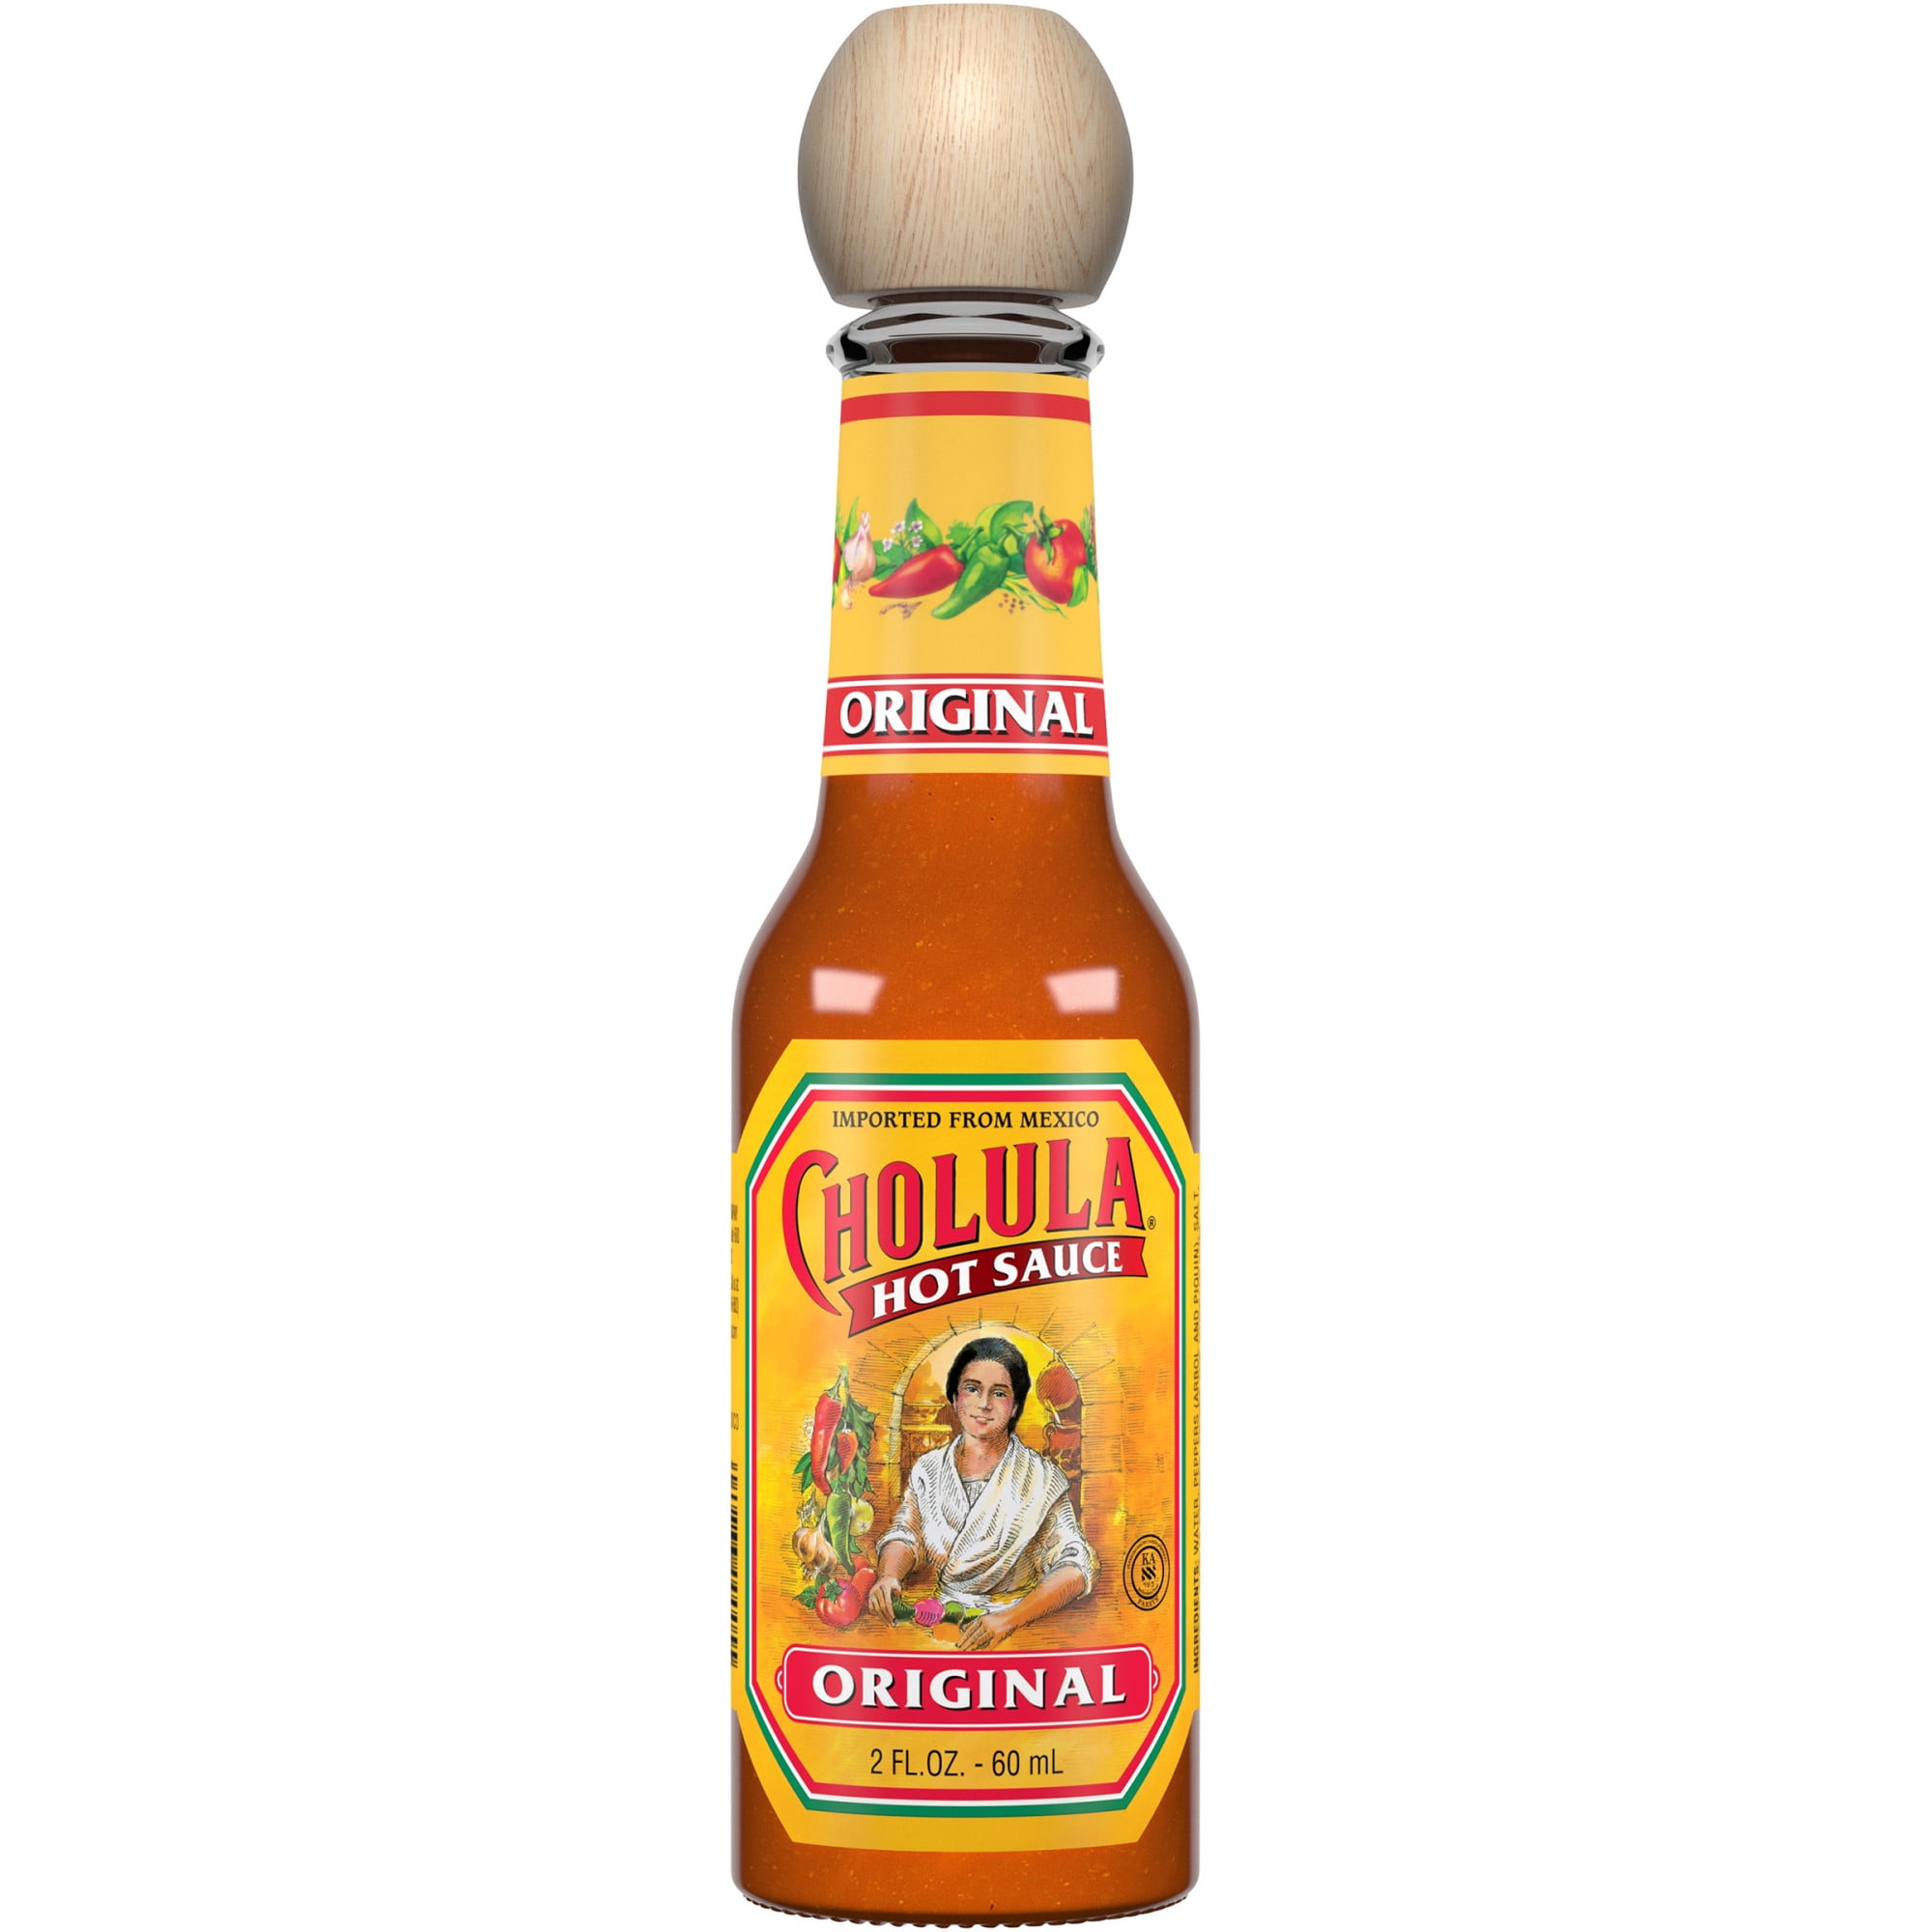 Cholula Original Hot Sauce, 2 fl oz Hot Sauces